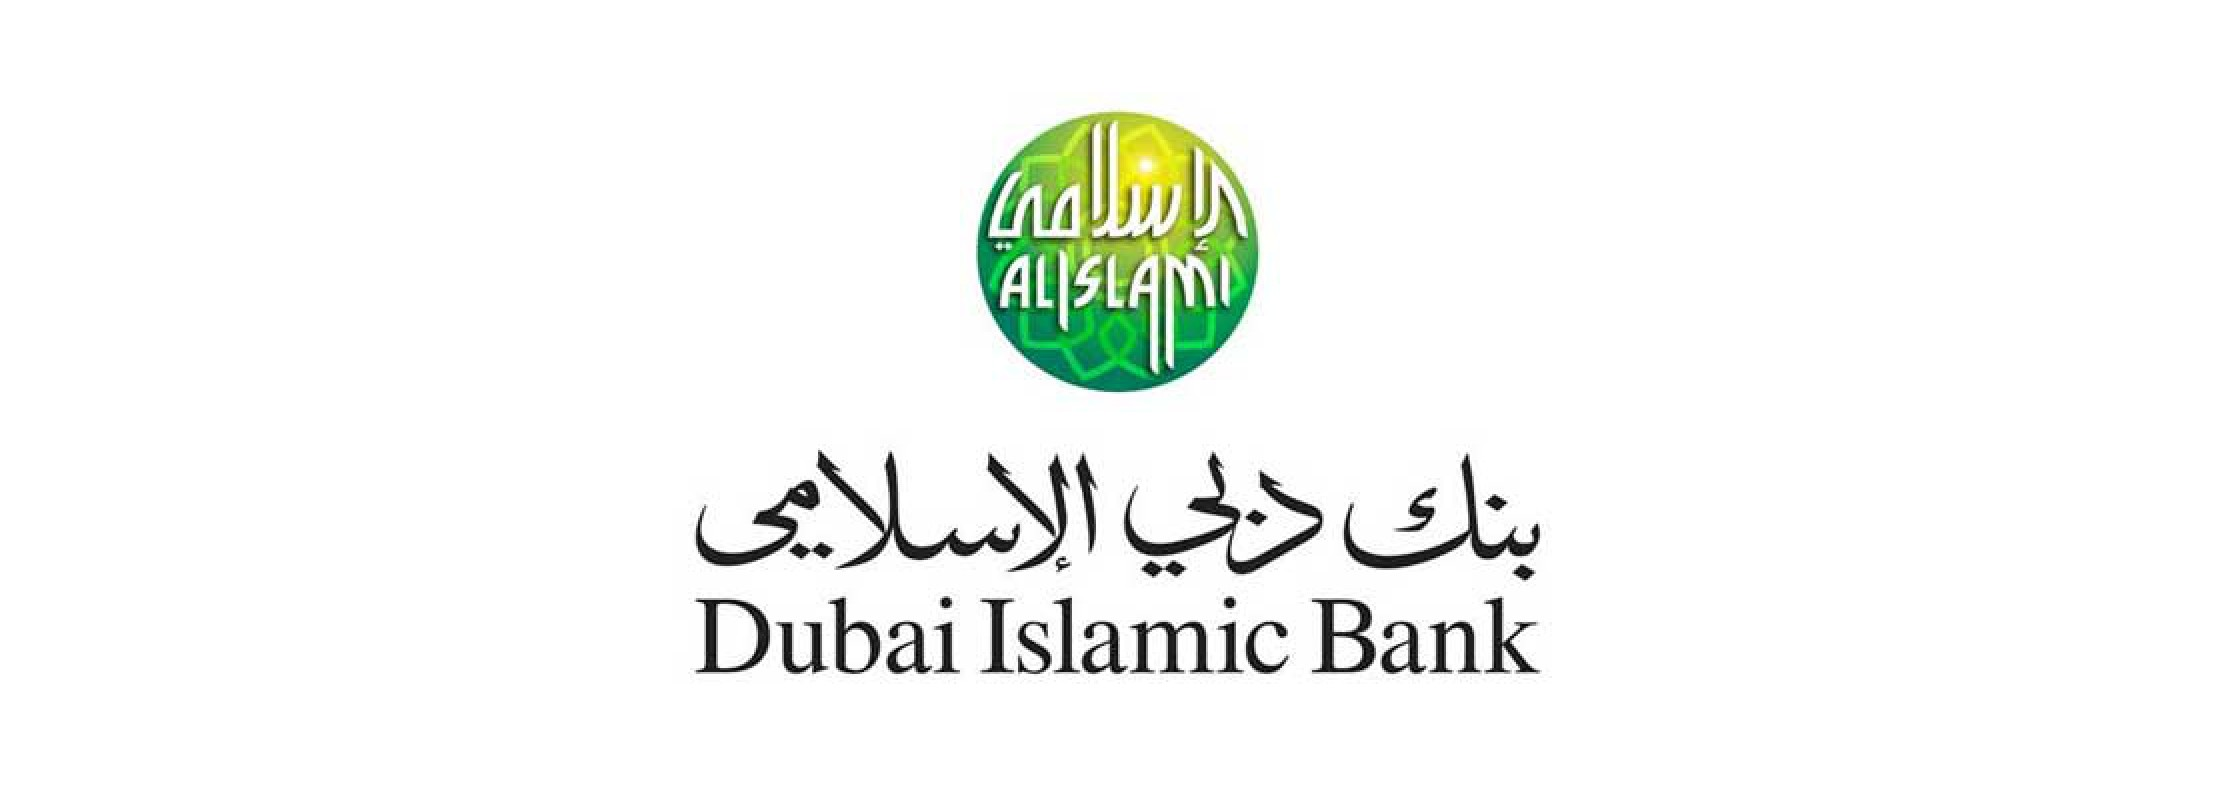 DIB UAE Banking App